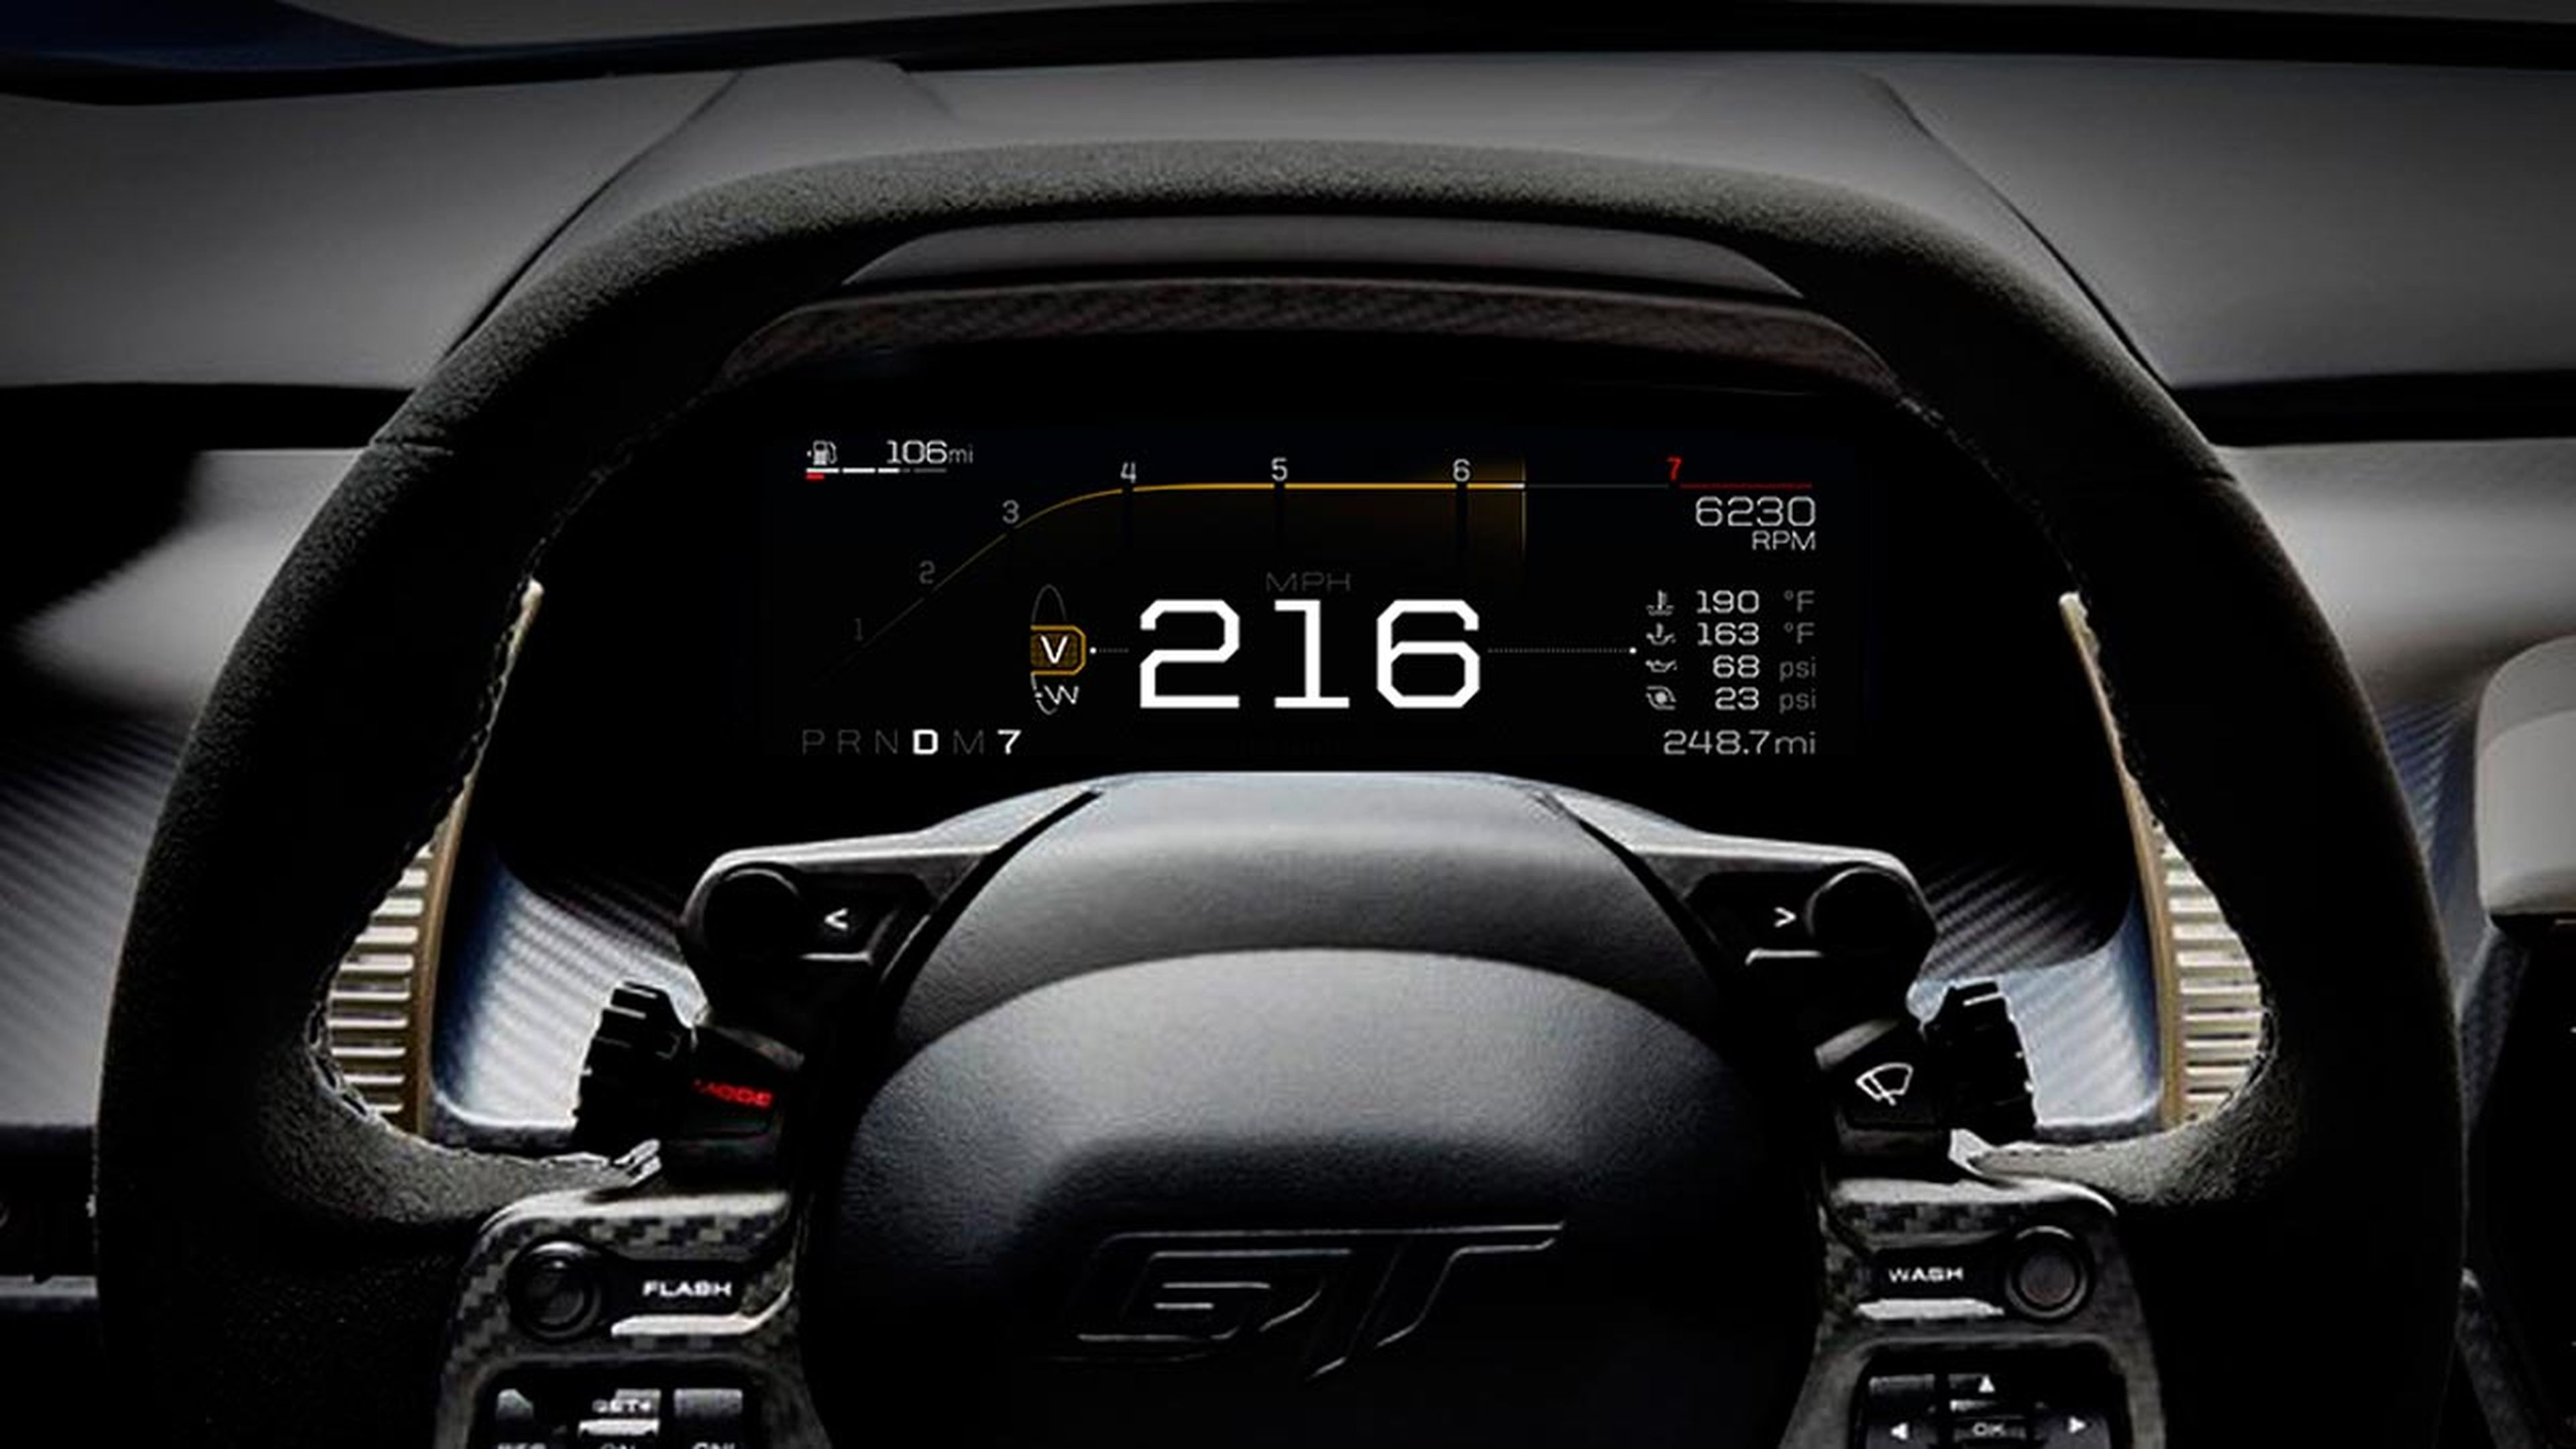 Cuadro de mandos digital Ford GT